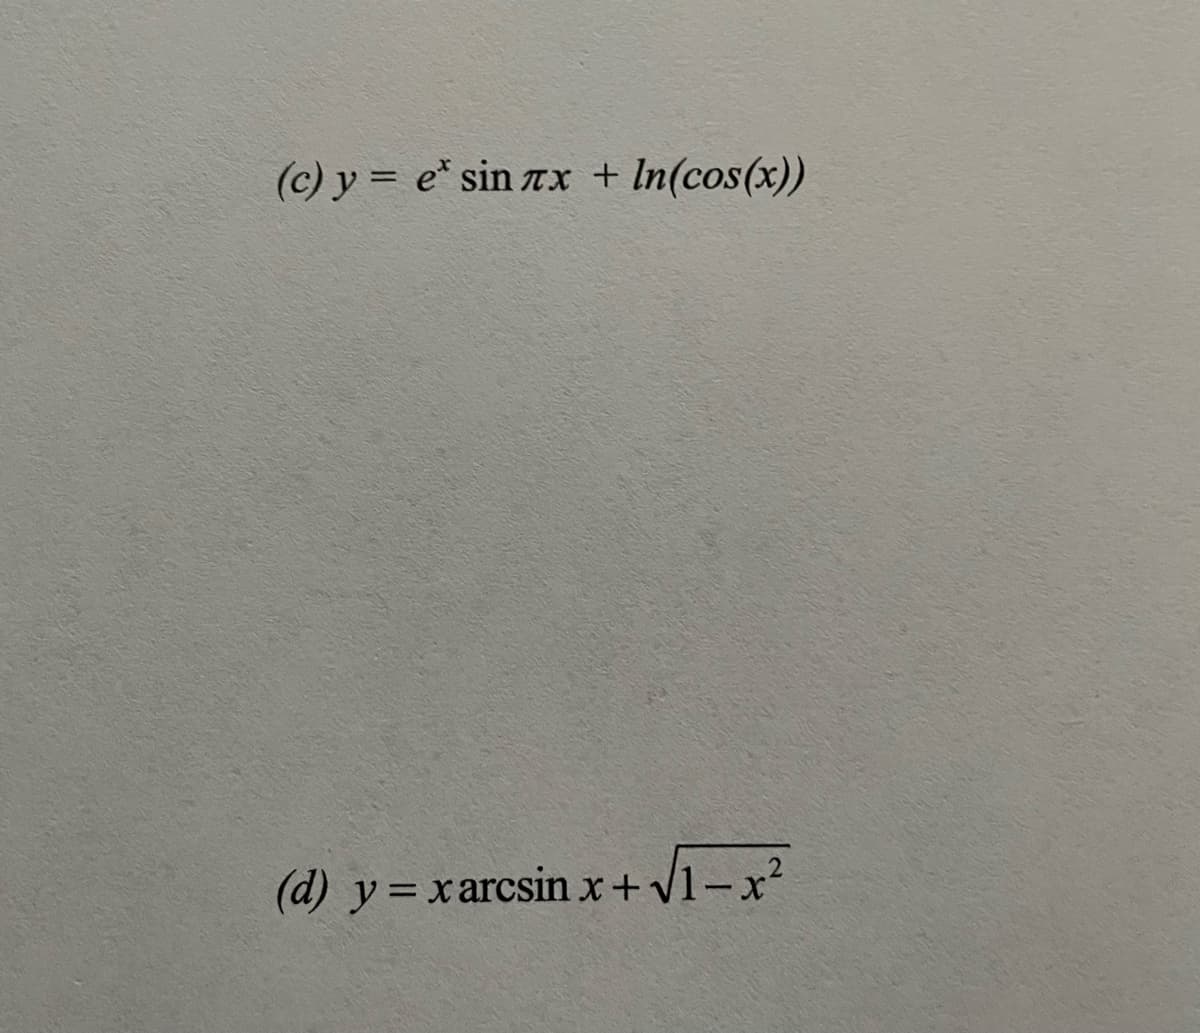 (c) y = e* sin rx + In(cos(x))
(d) y=xarcsin x+v1-x²
